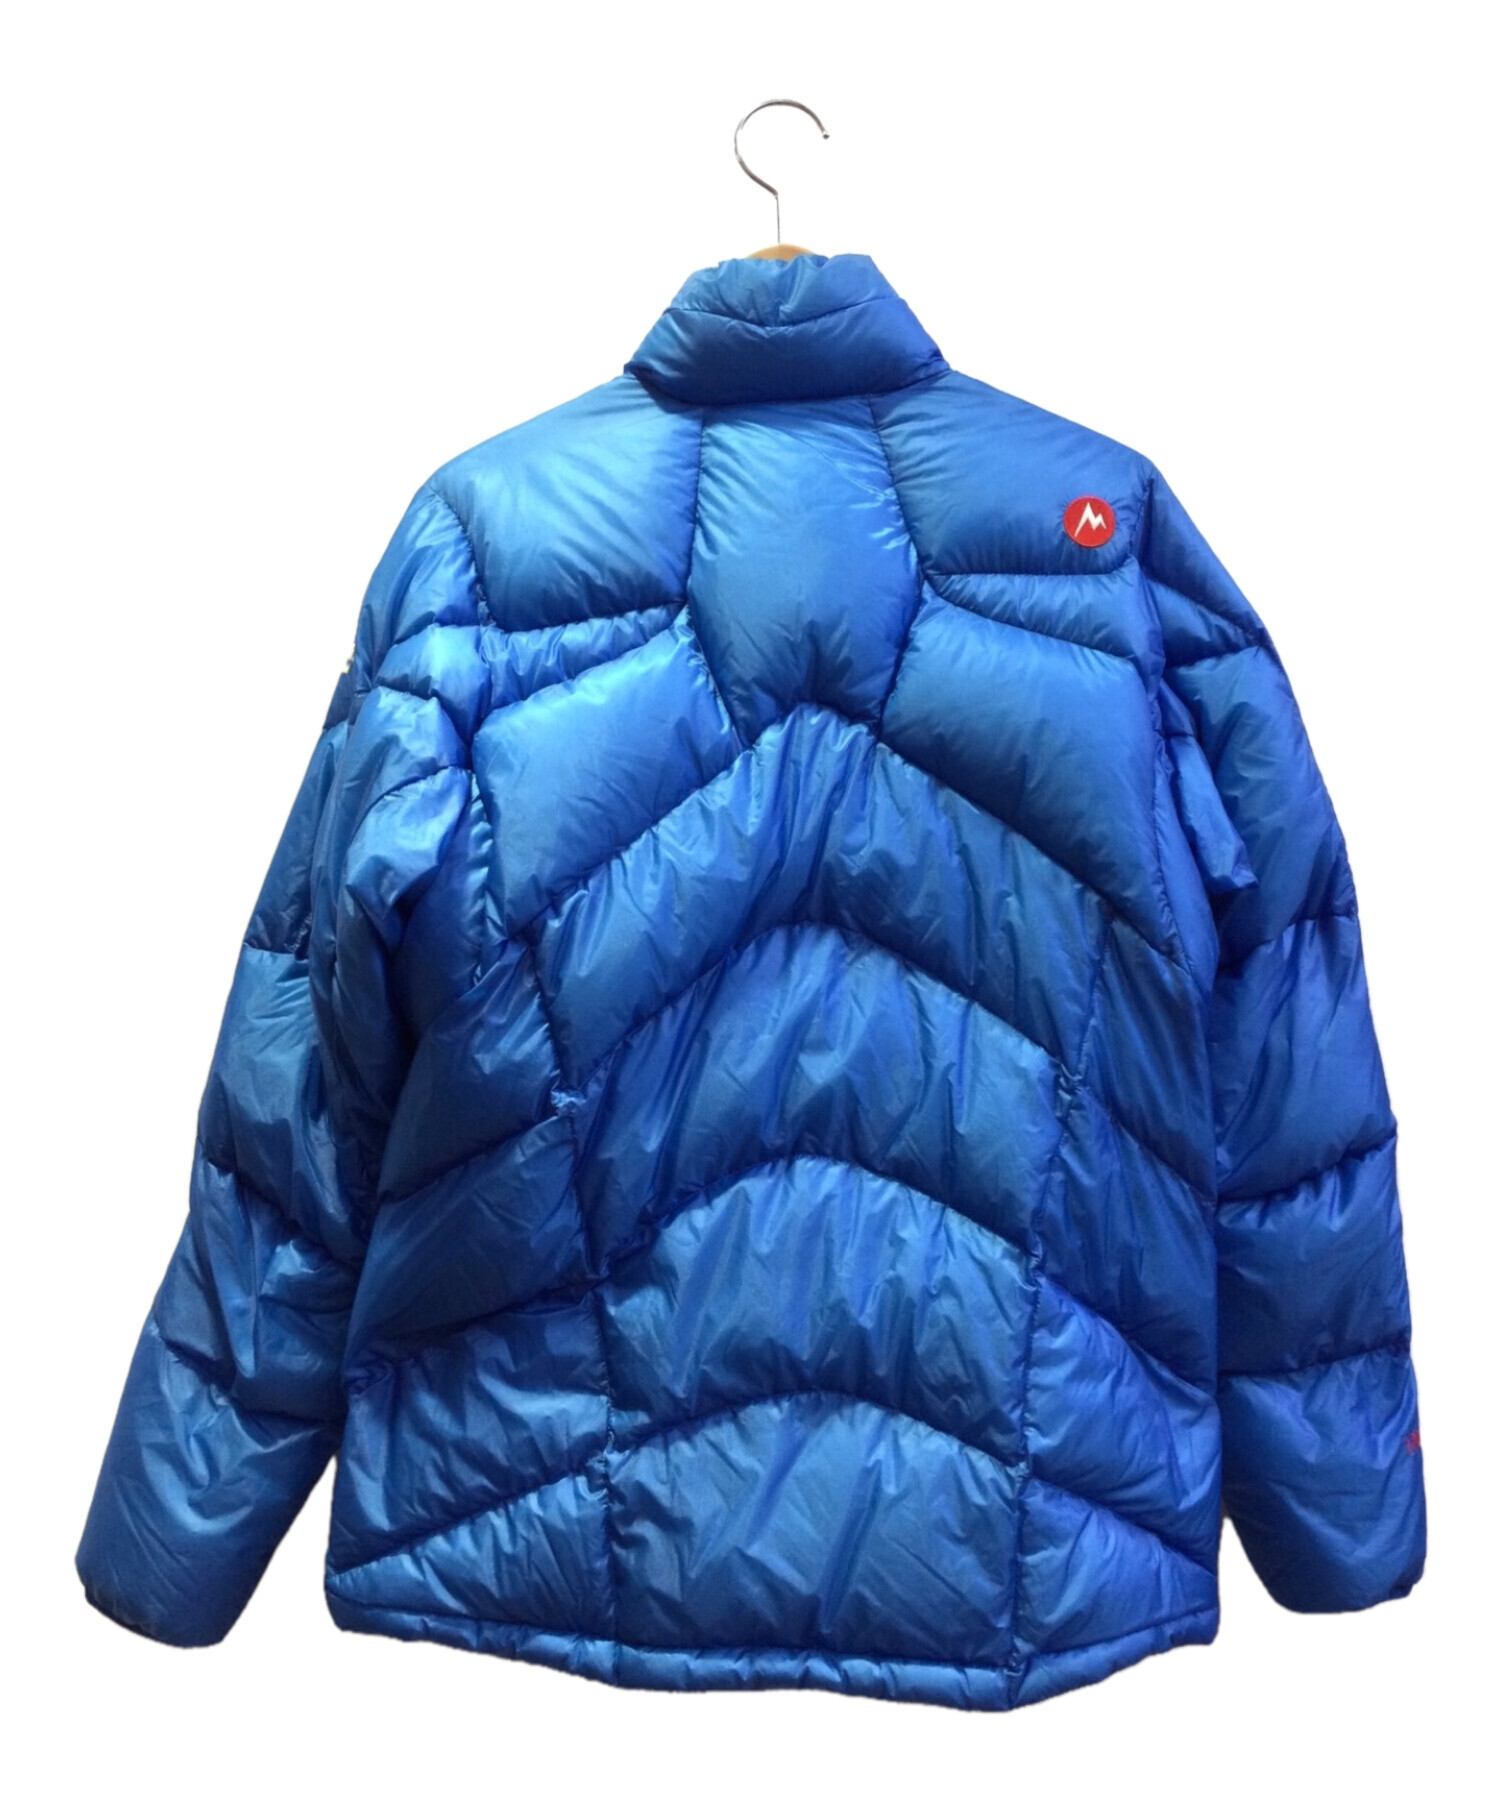 MARMOT (マーモット) 1000フィルパワーダウンジャケット ブルー サイズ:M